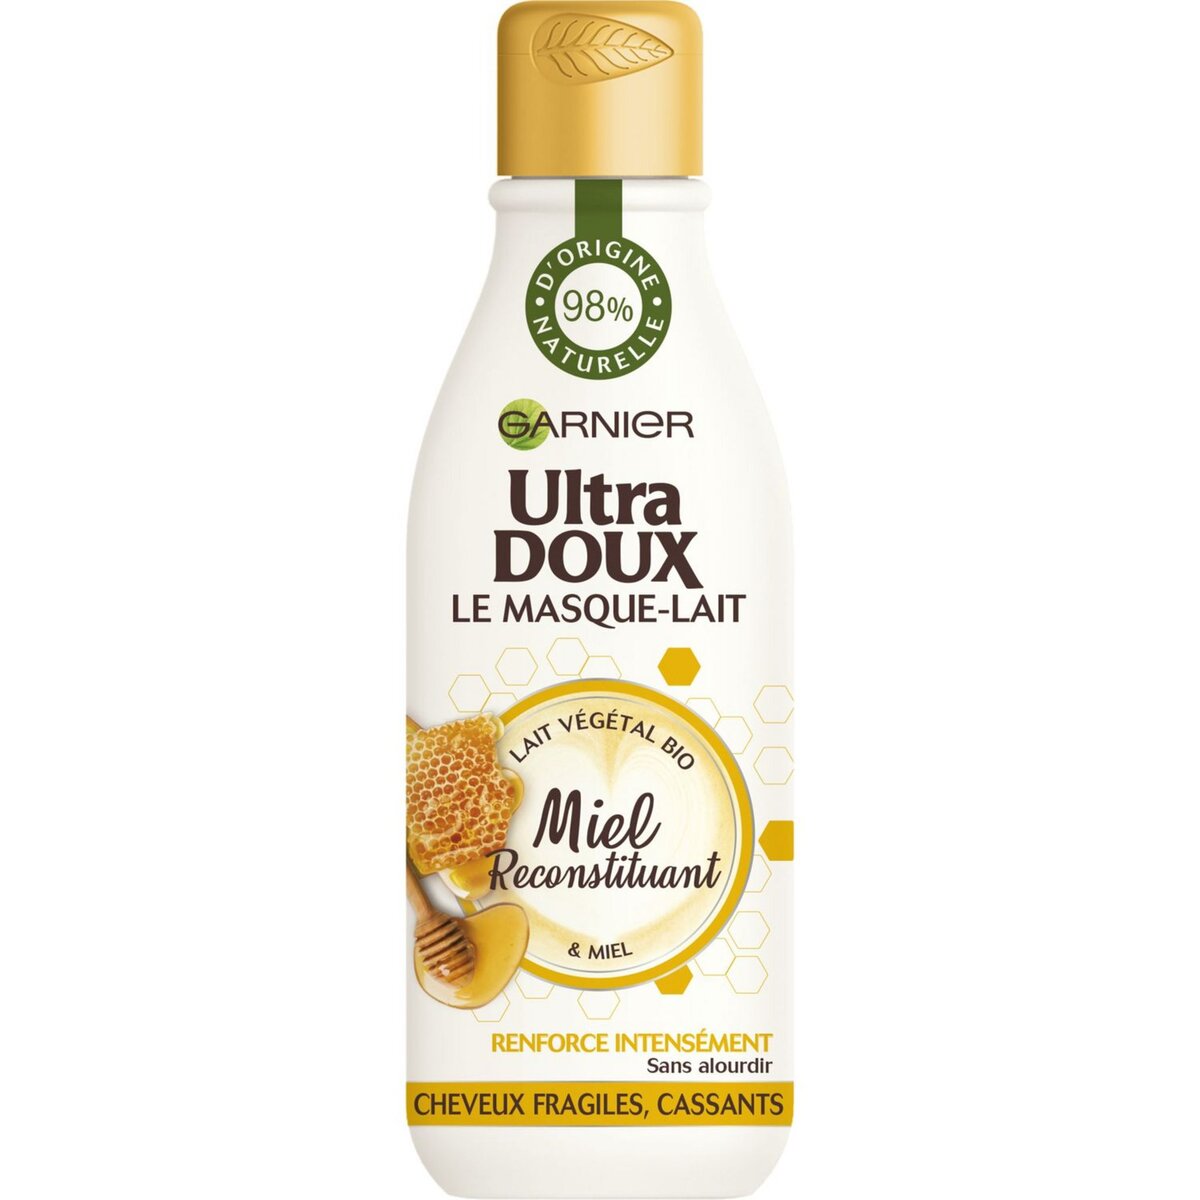 ULTRA DOUX Masque au lait végétal bio & miel cheveux fragiles, cassants 250ml